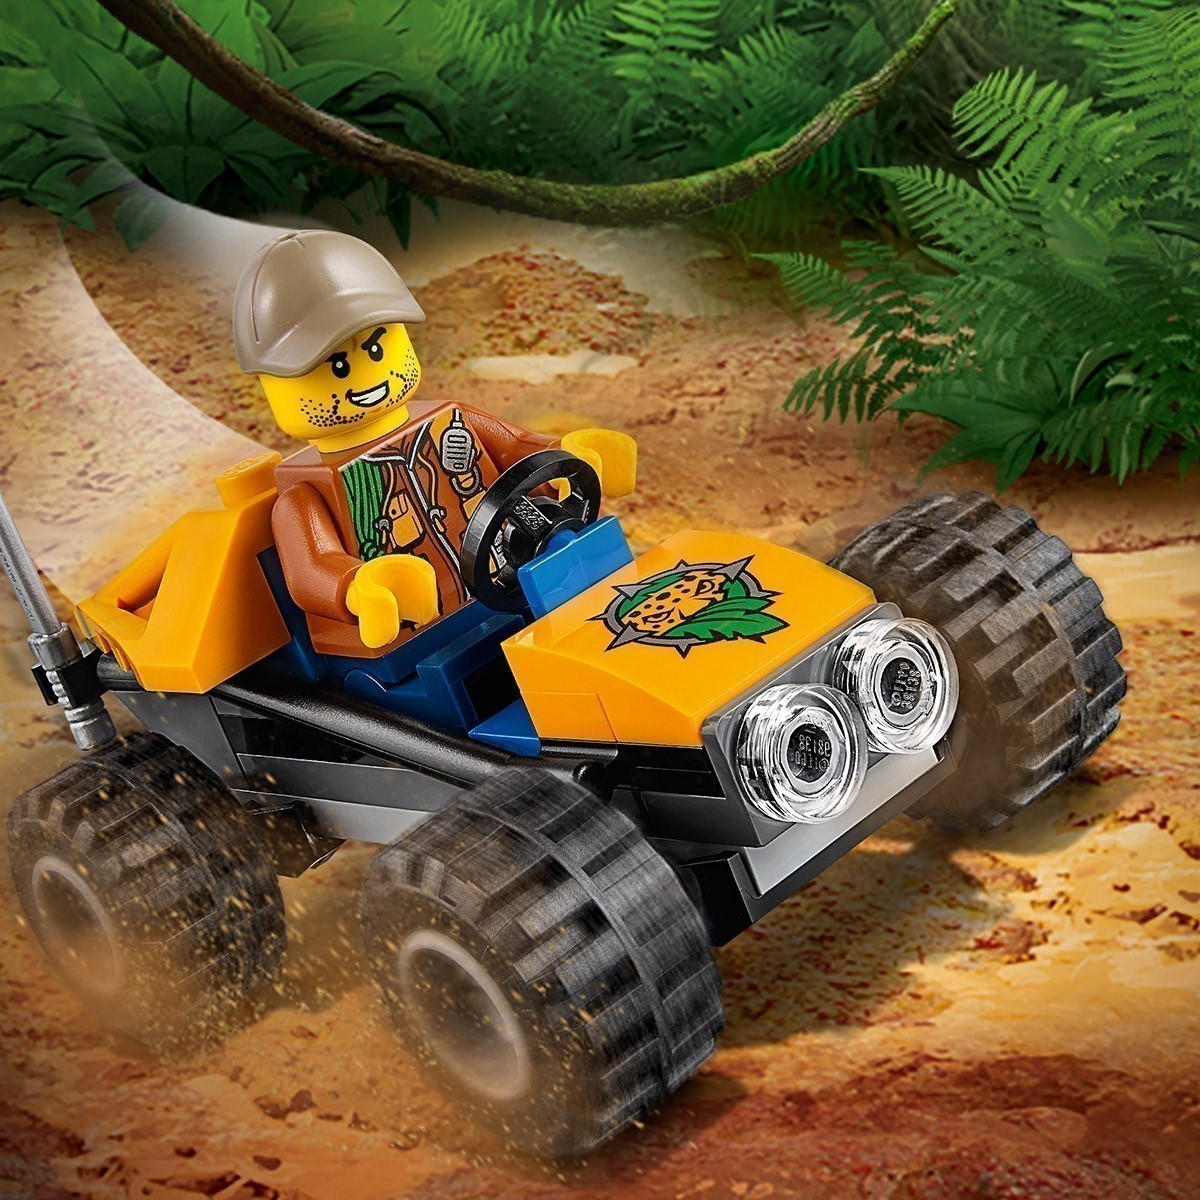 LEGO® City - 60156 Jungle Buggy